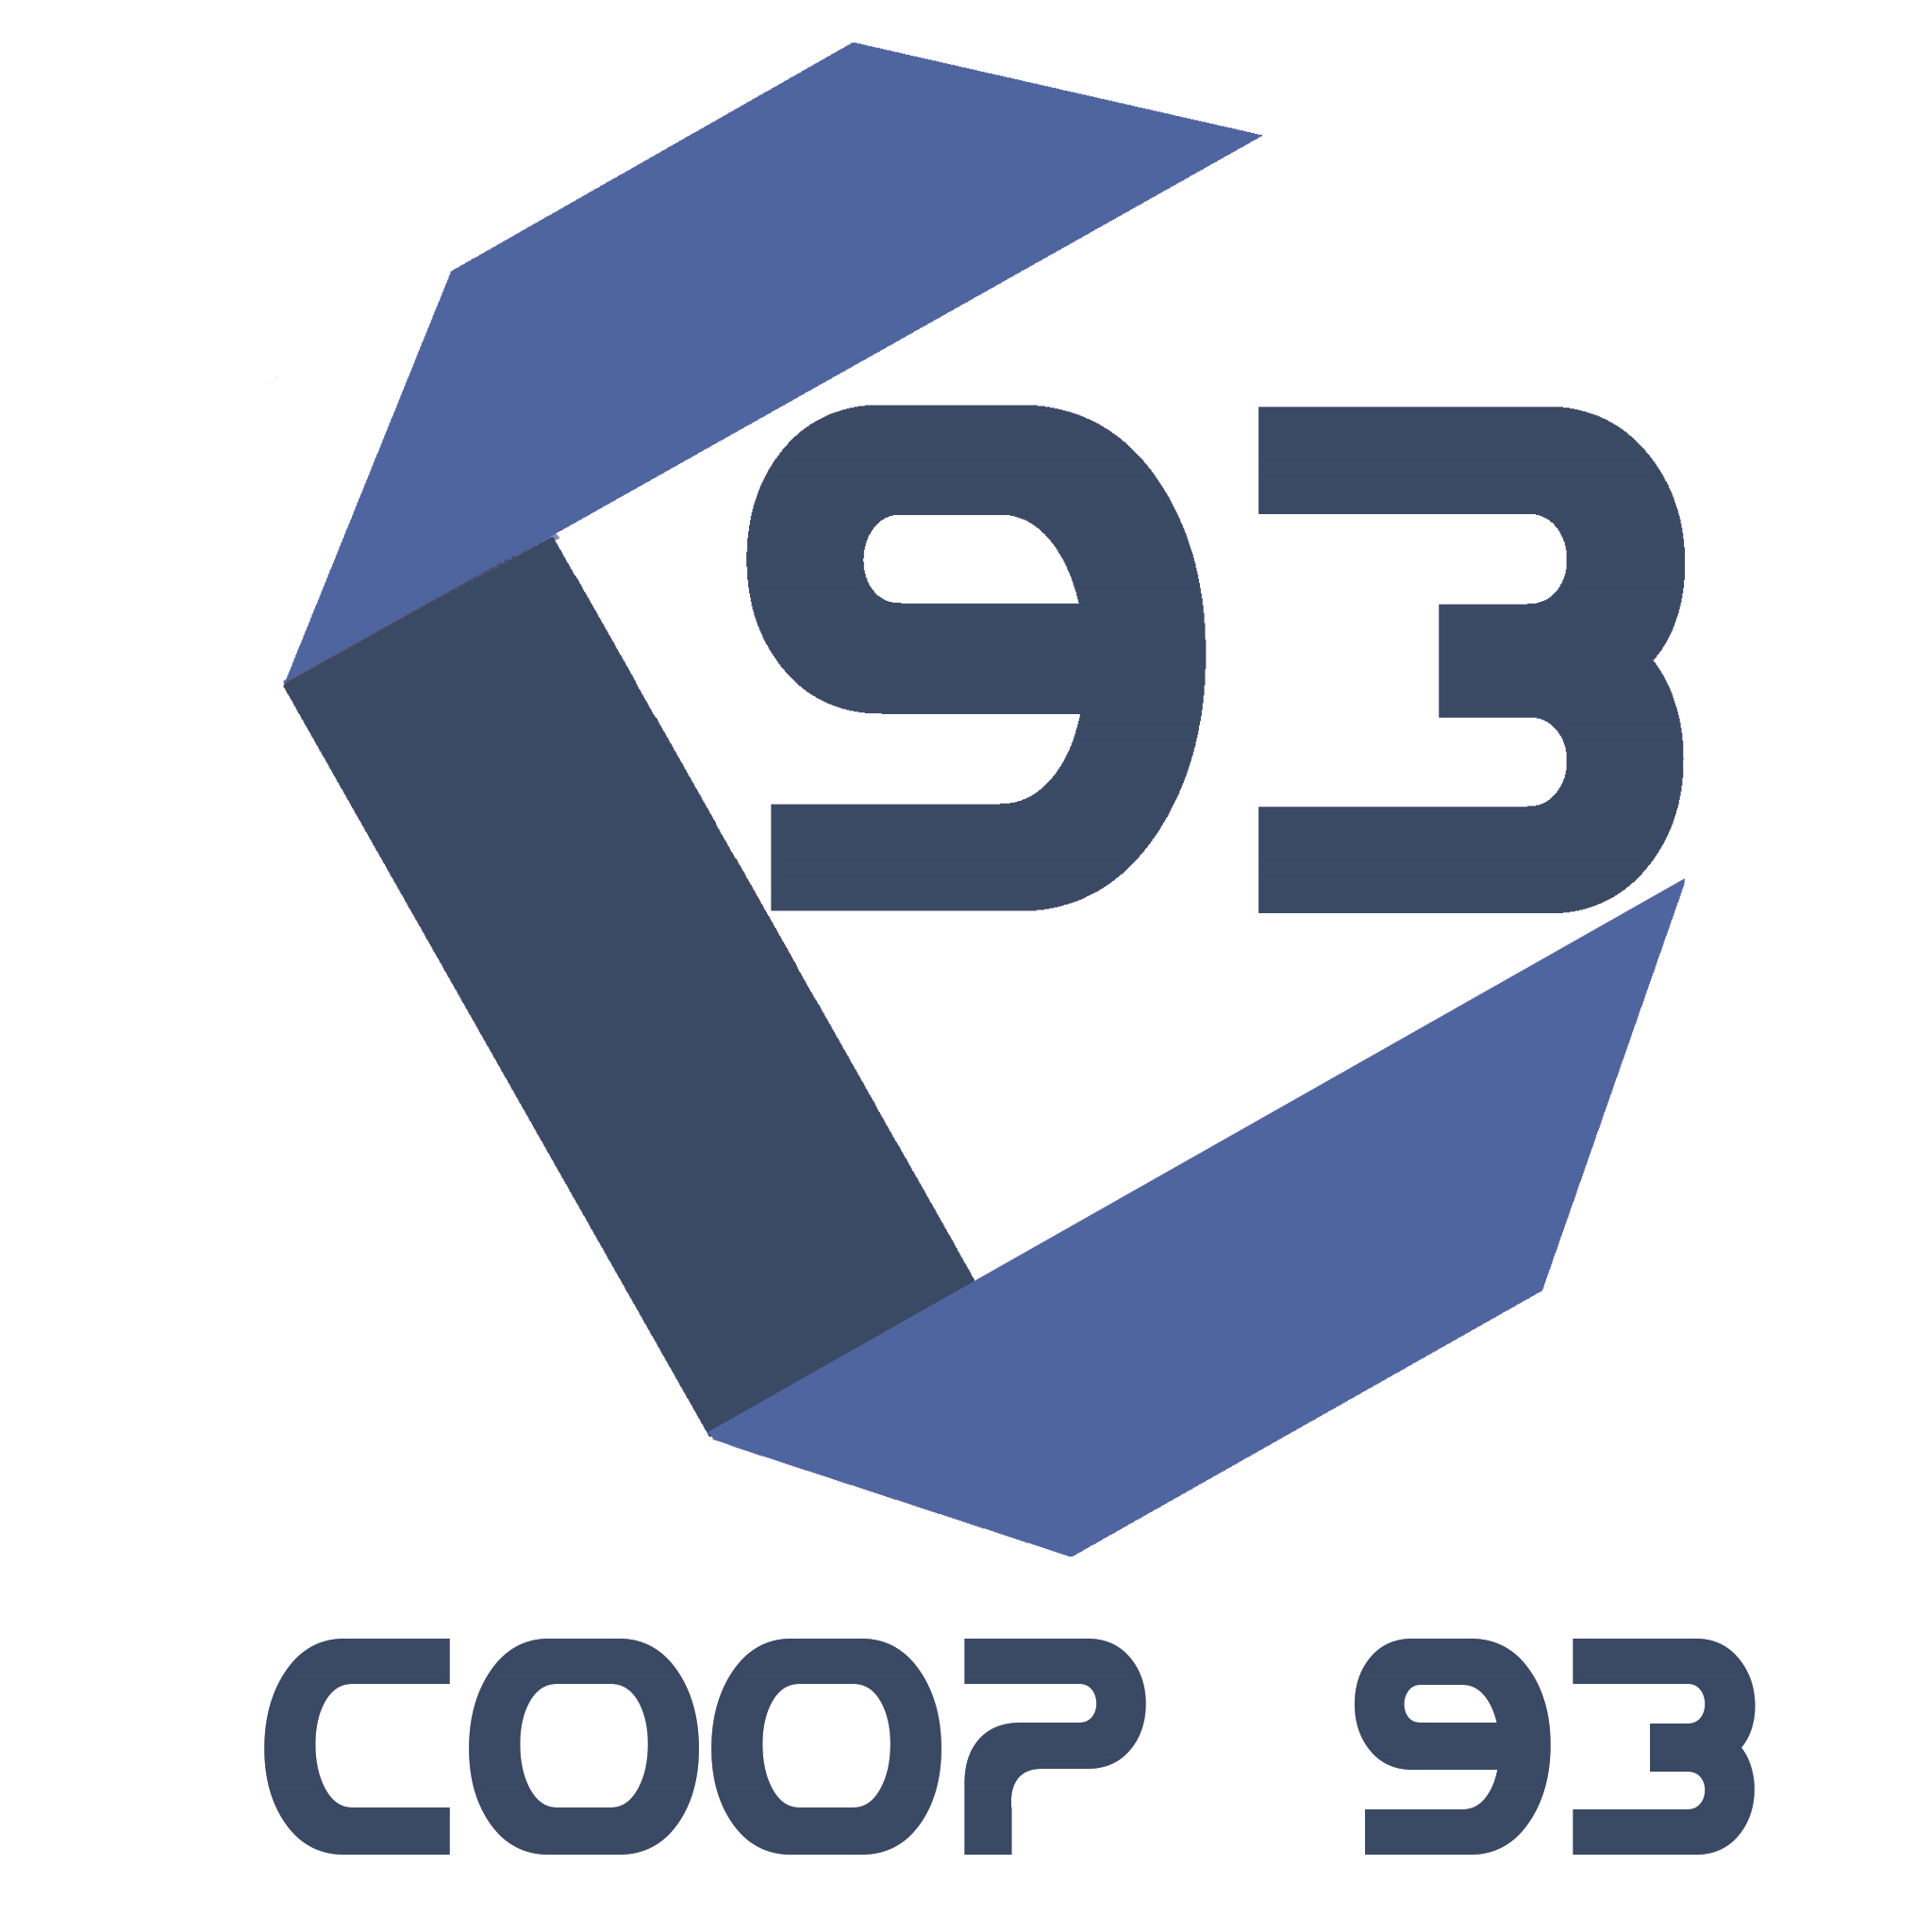 COOP 93